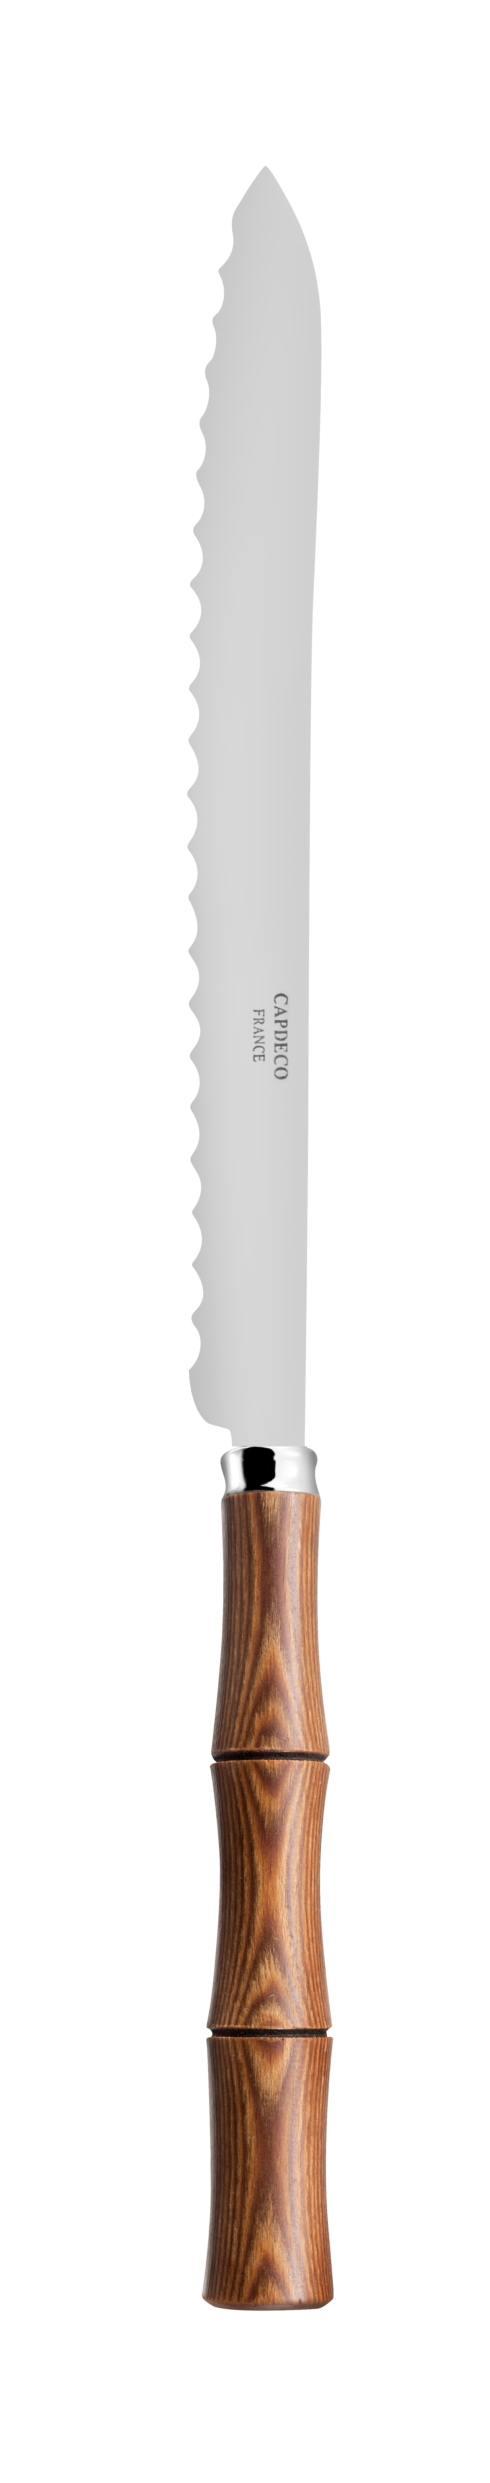 $90.00 Bread knife